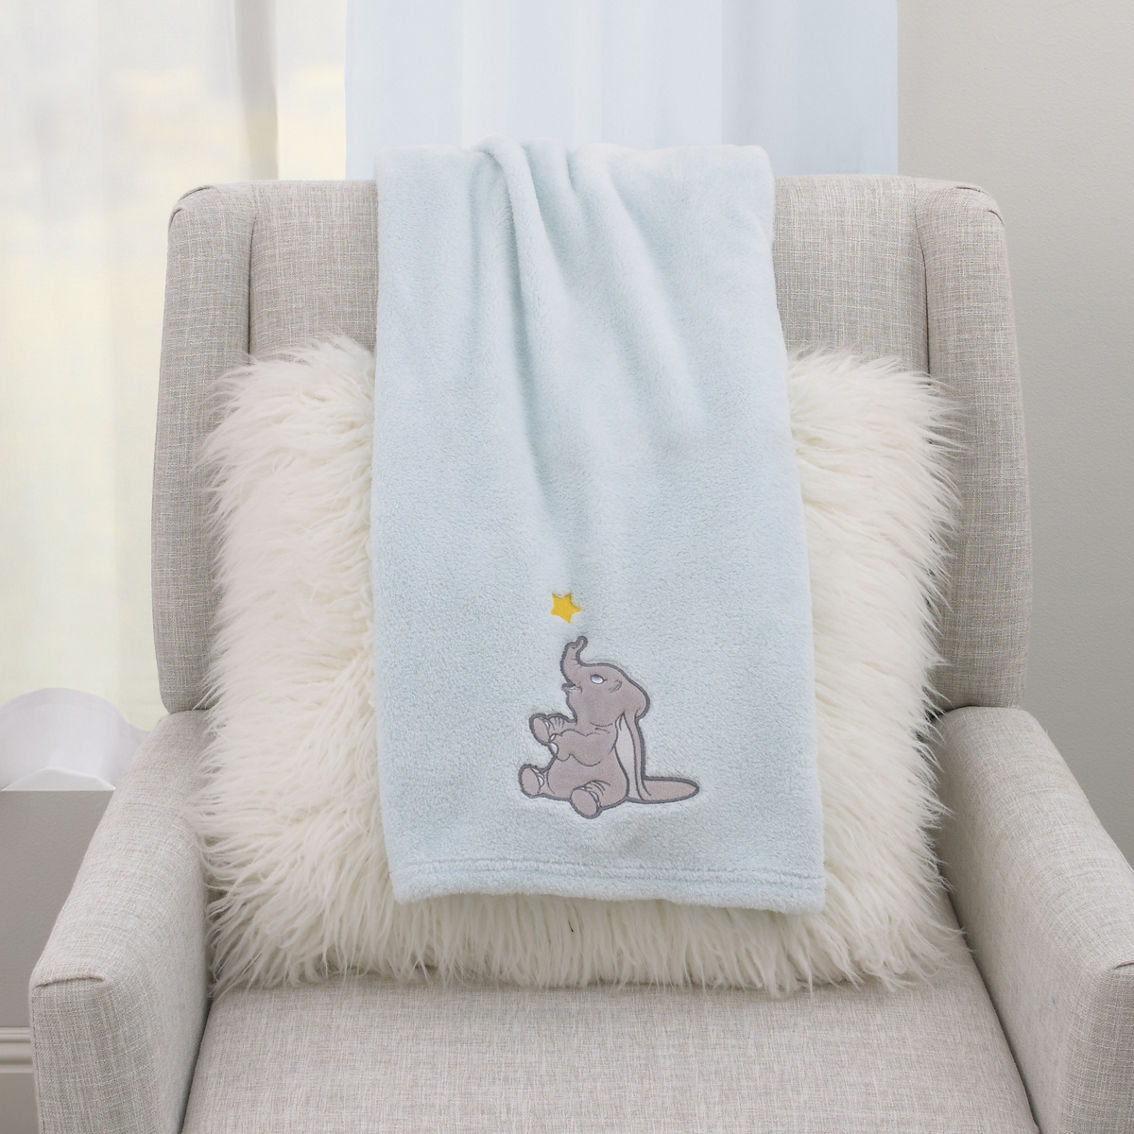 Disney Dumbo Shine Bright Little Star Baby Blanket - Image 4 of 5